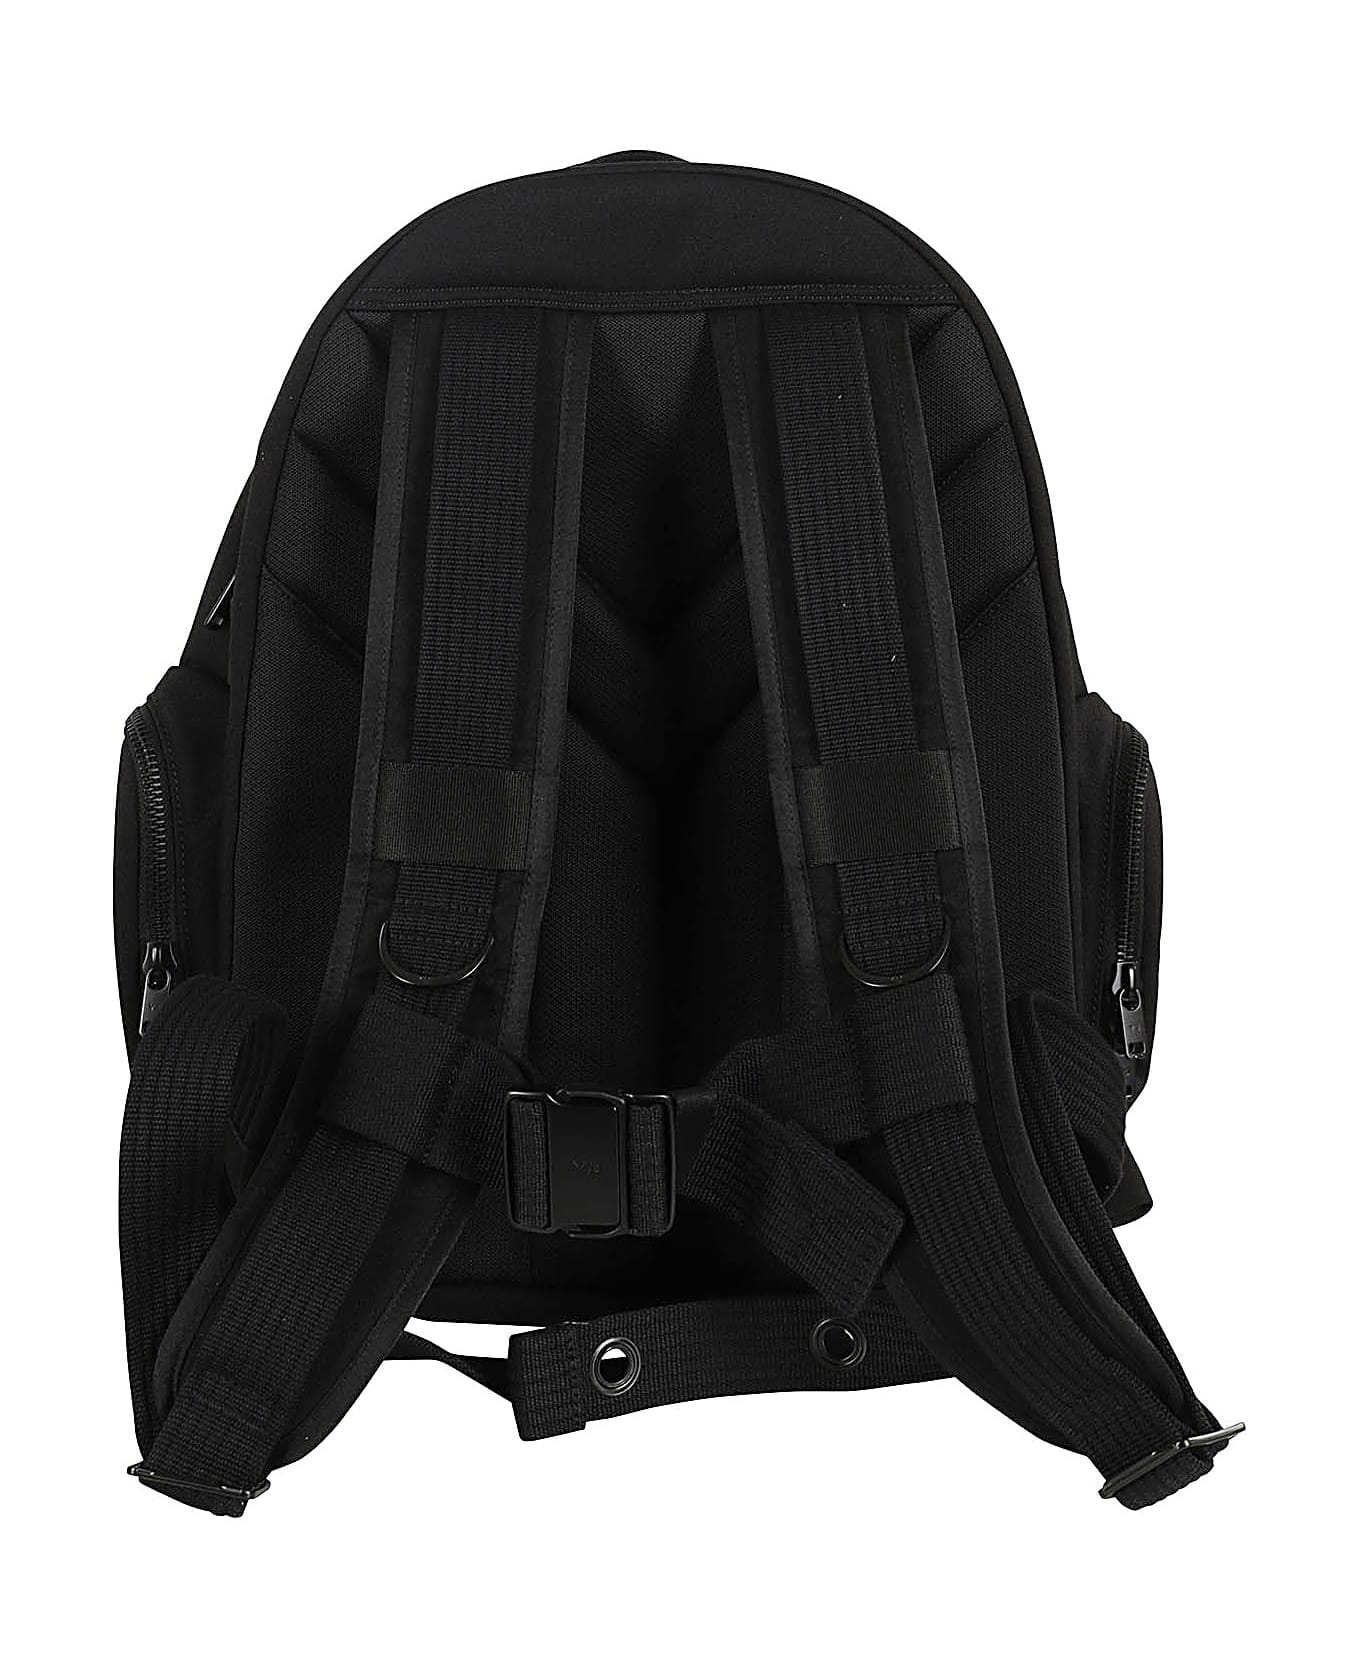 Y-3 Utility Backpack - Black バックパック